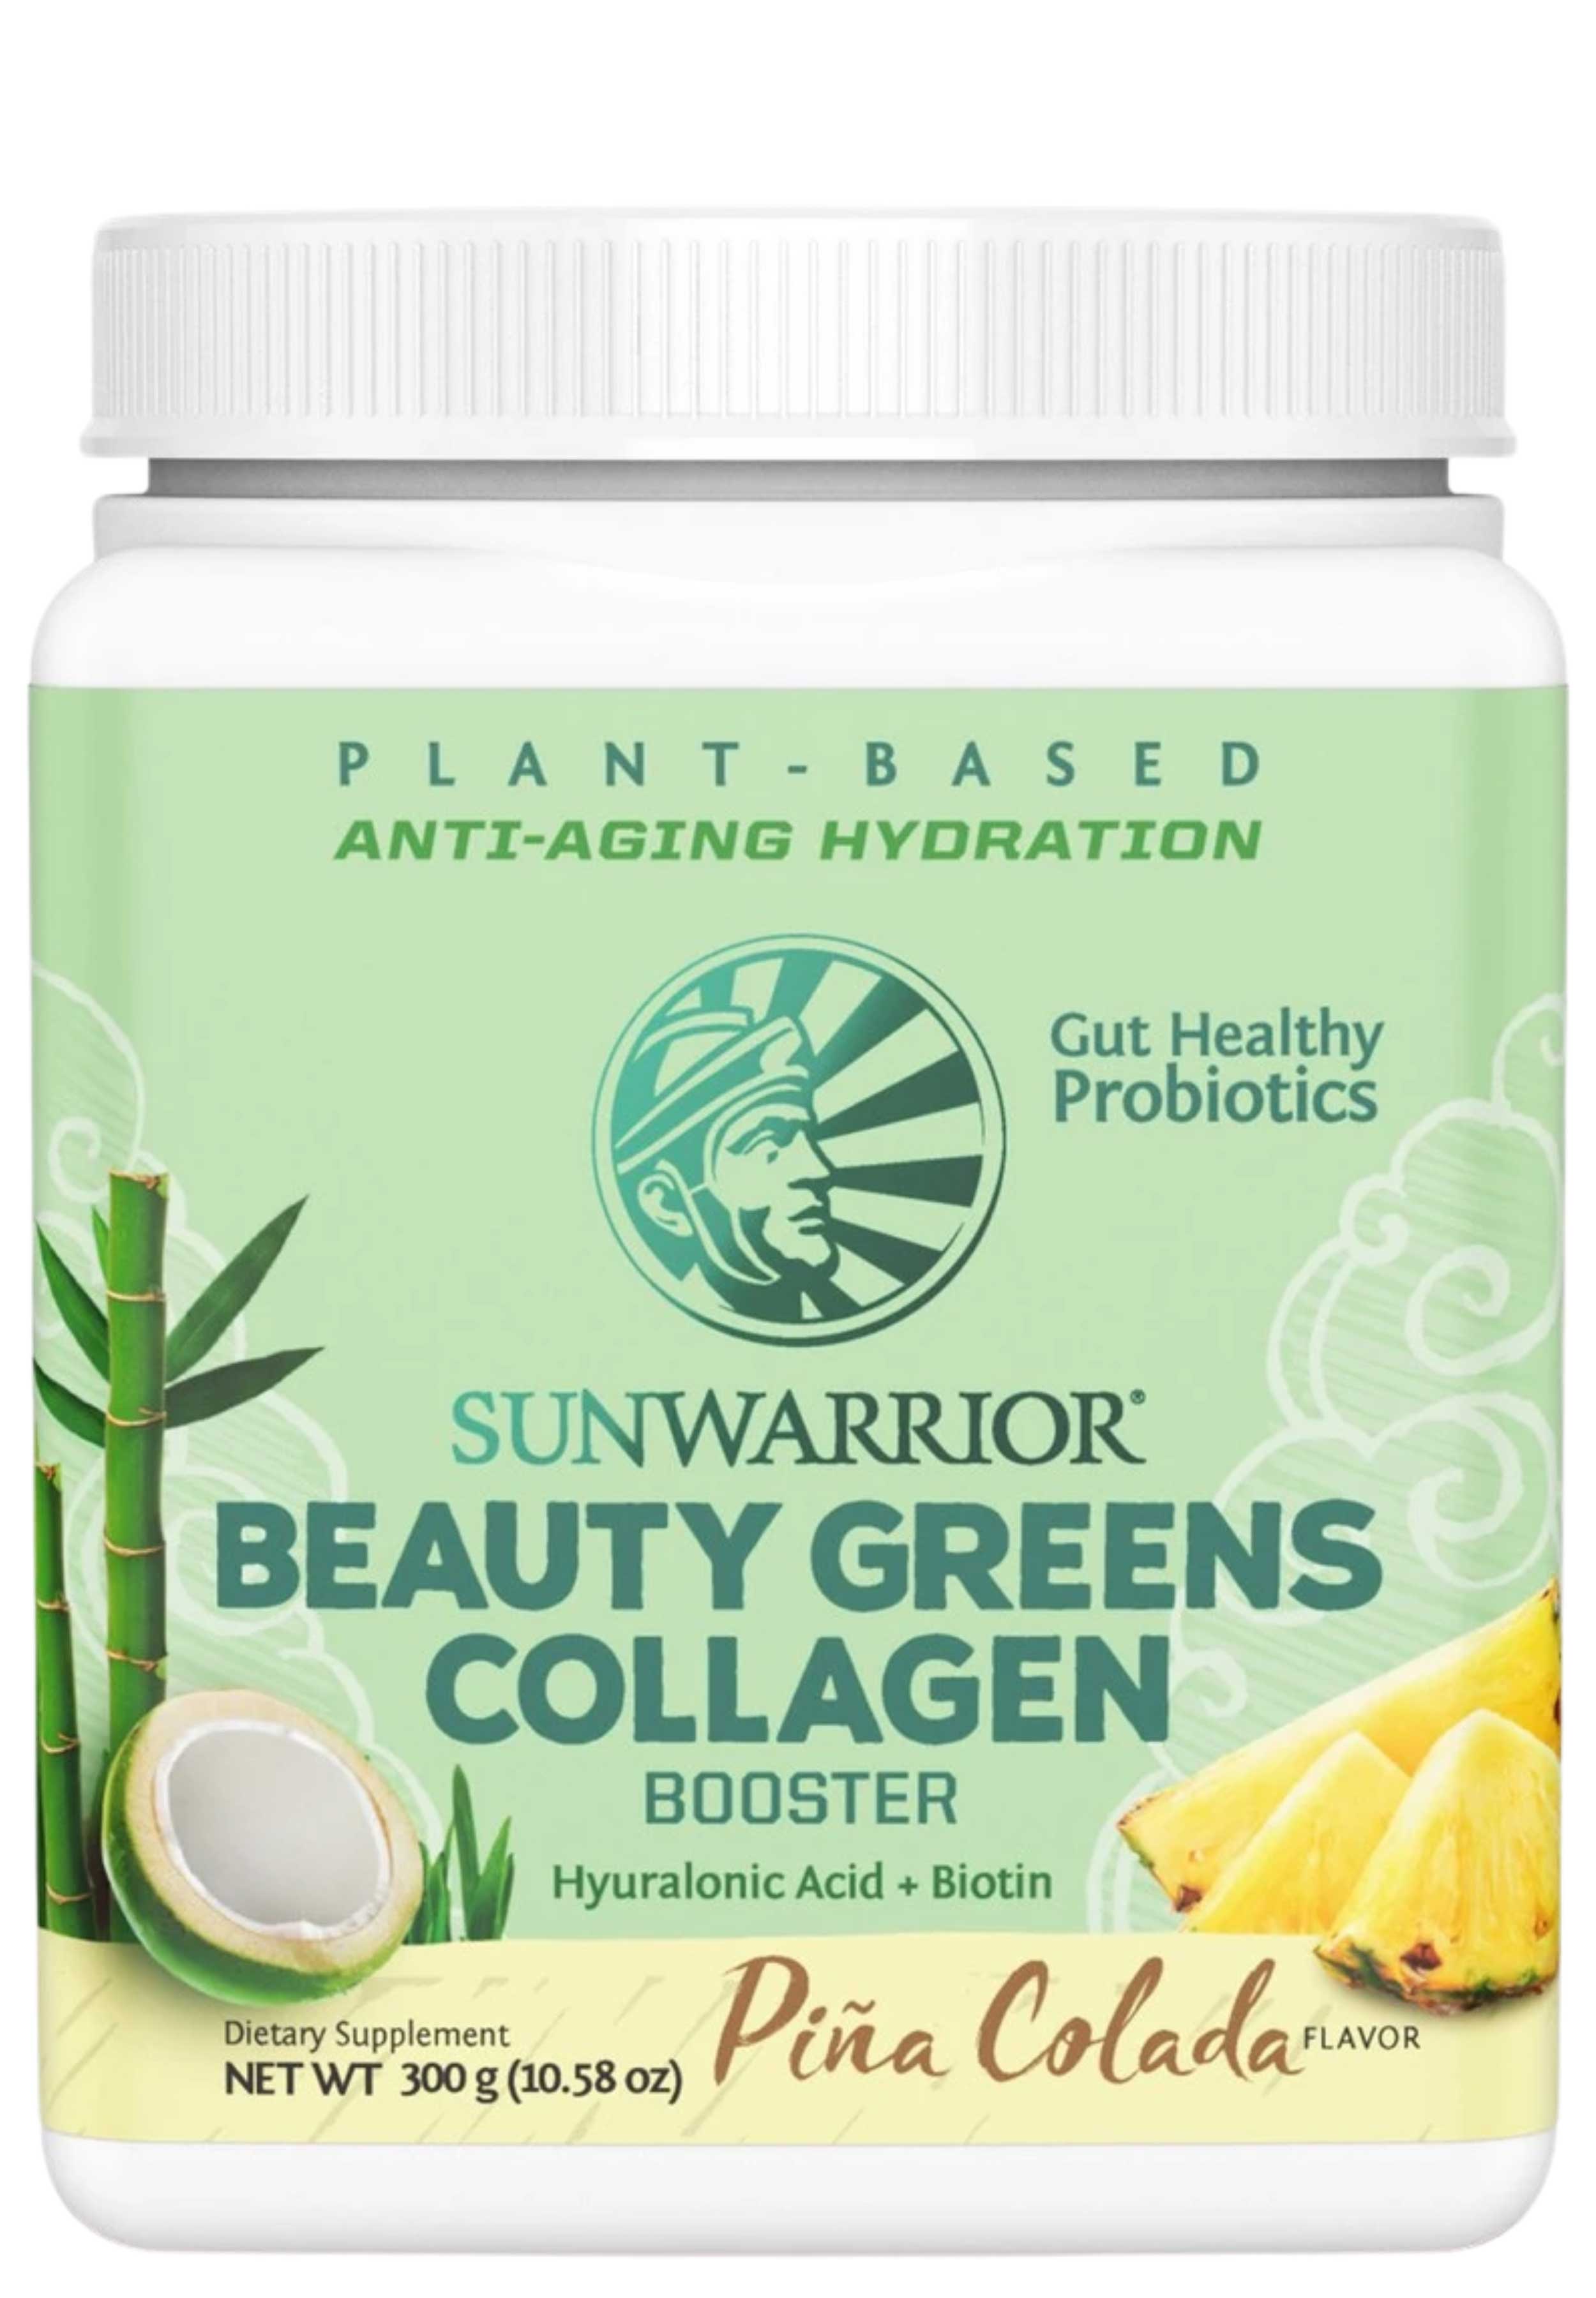 Sunwarrior Beauty Greens Collagen Booster Piña Colada